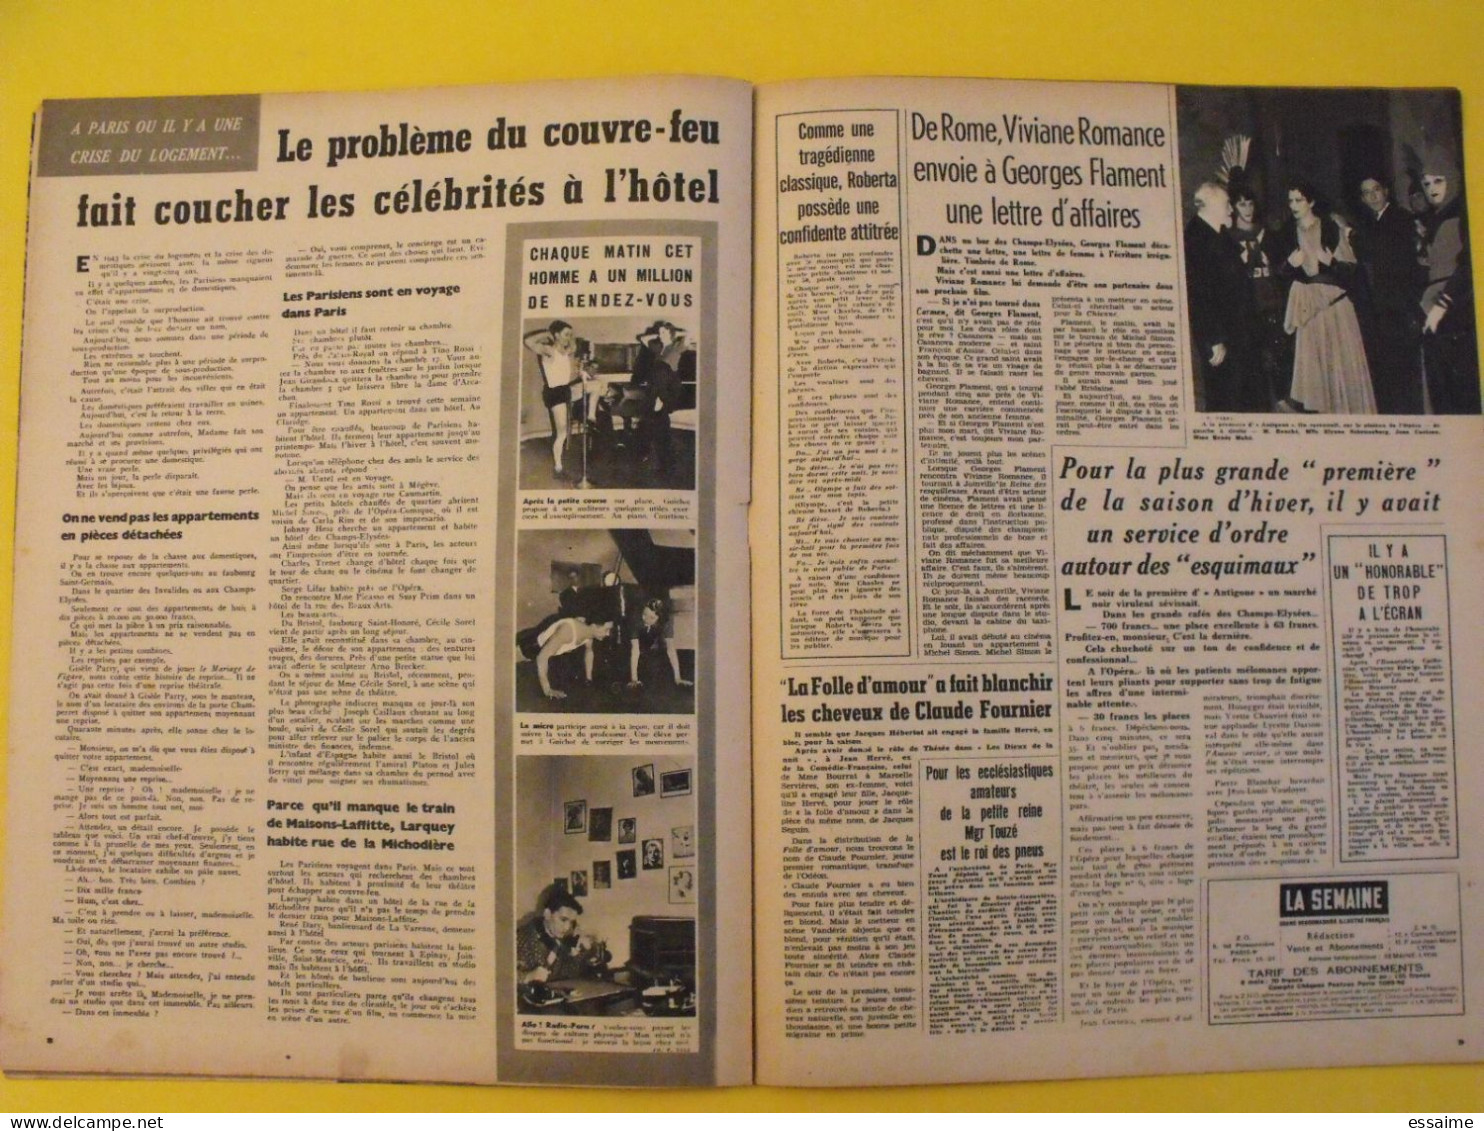 6 revues La semaine de 1943. actualités guerre photos collaboration moscou edwige feuillère stalingrad andré claveau